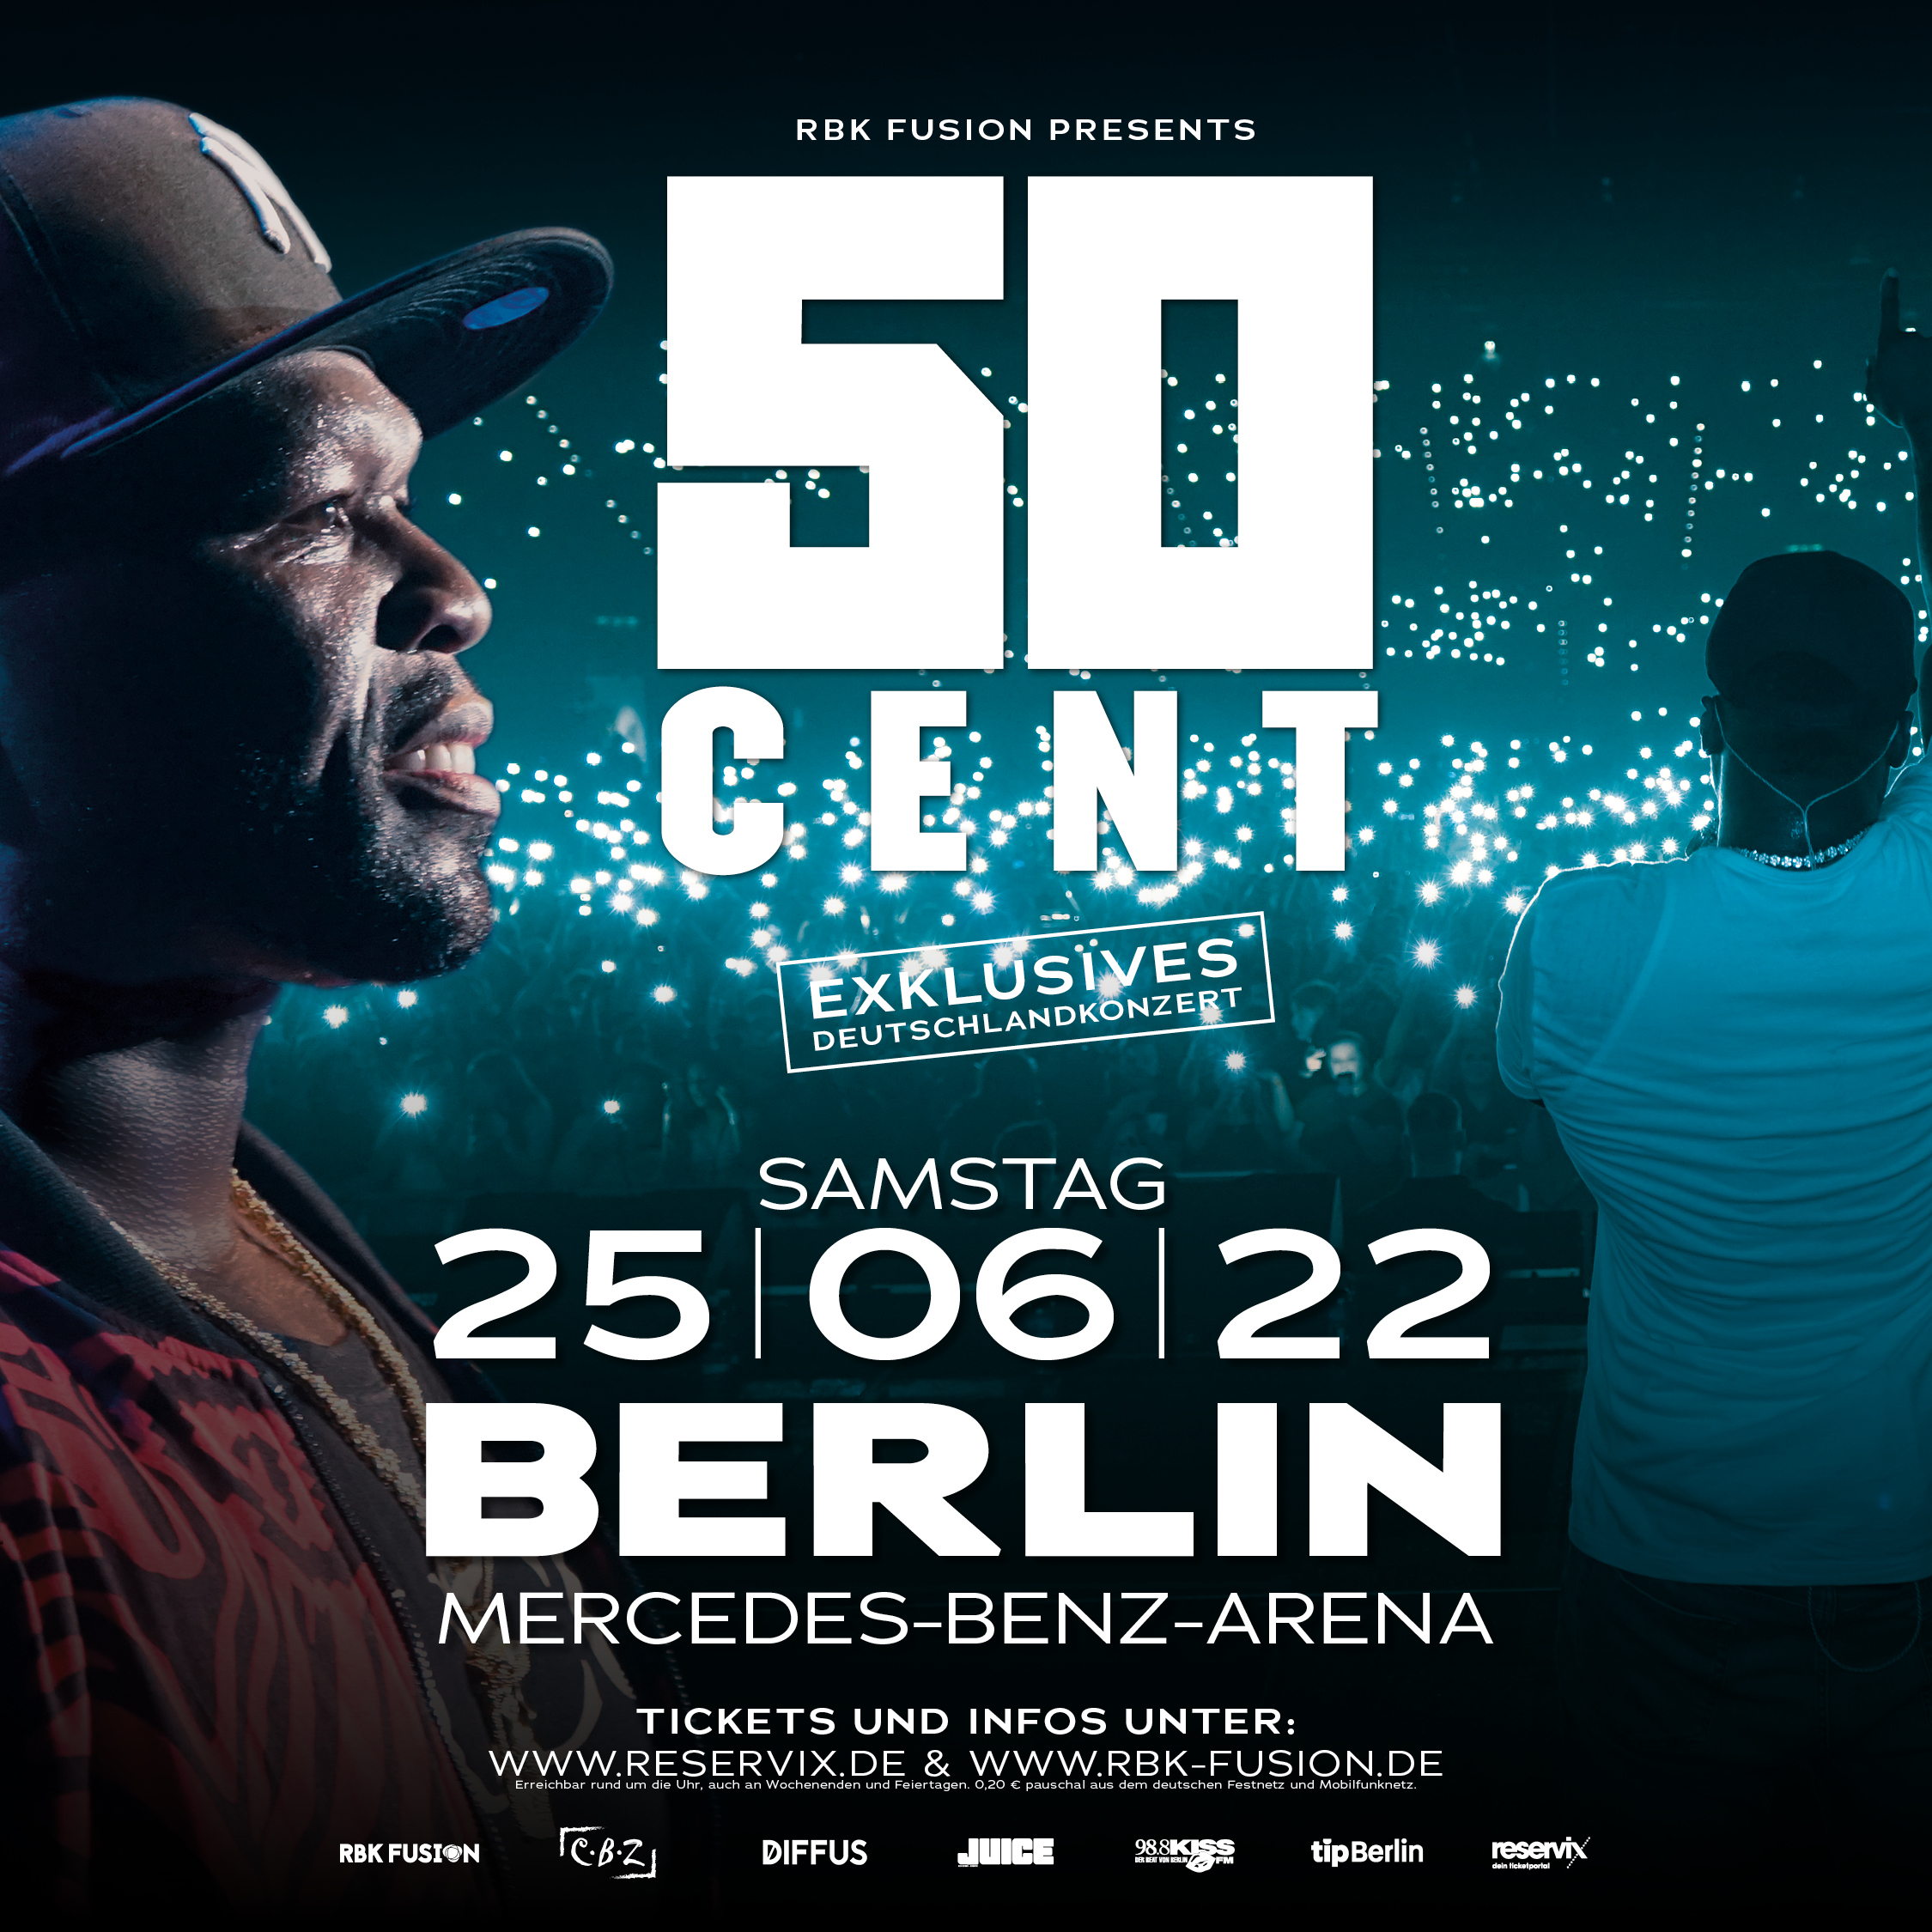 Deutscher Rapper Chefket als Support von US-Superstar 50 Cent in Berlin und Frankfurt